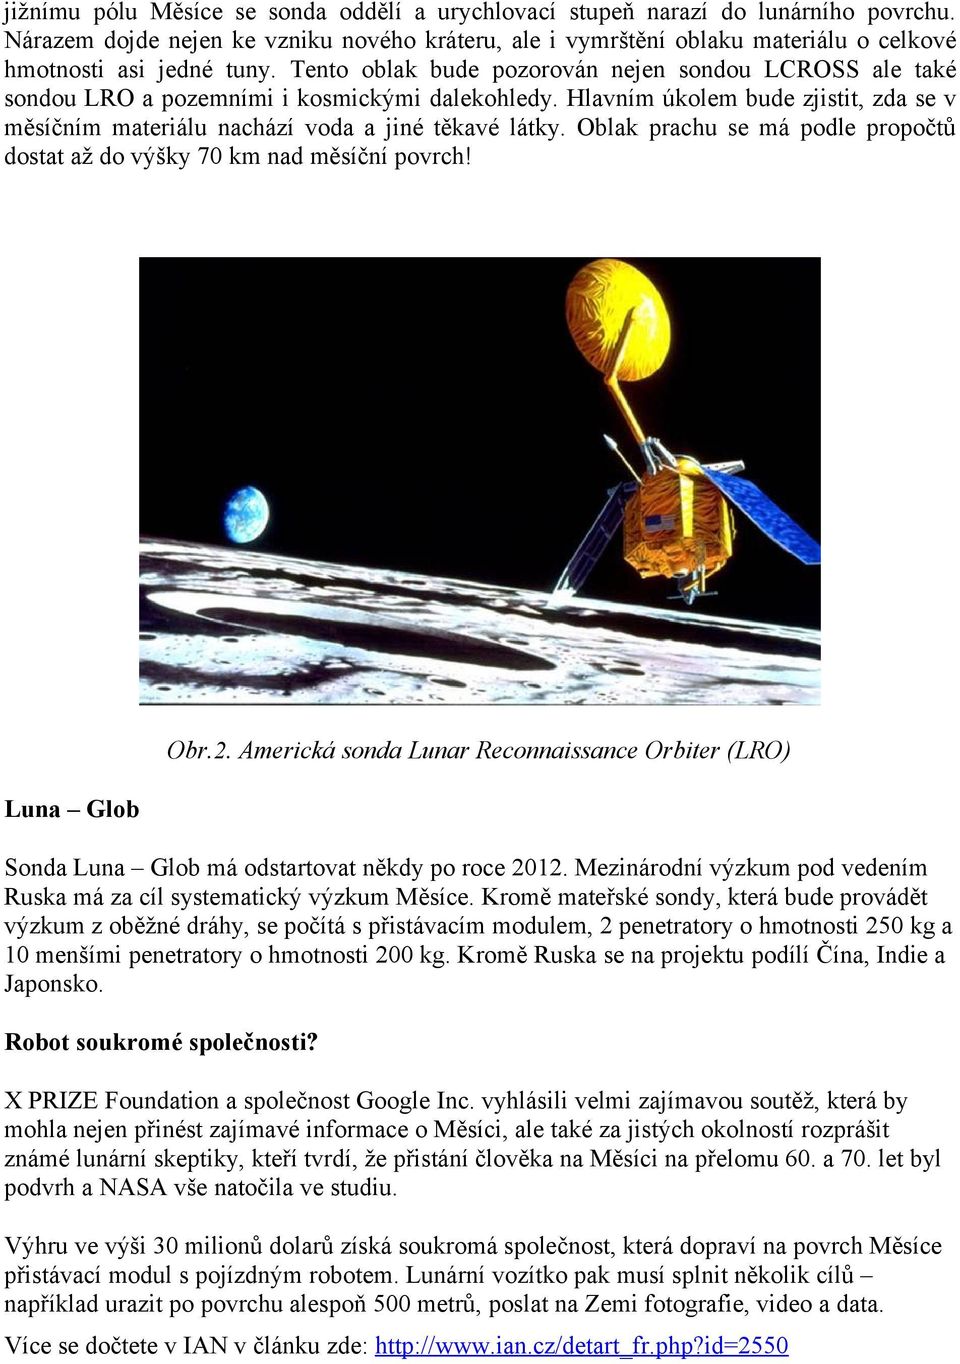 Oblak prachu se má podle propočtů dostat až do výšky 70 km nad měsíční povrch! Luna Glob Obr.2. Americká sonda Lunar Reconnaissance Orbiter (LRO) Sonda Luna Glob má odstartovat někdy po roce 2012.